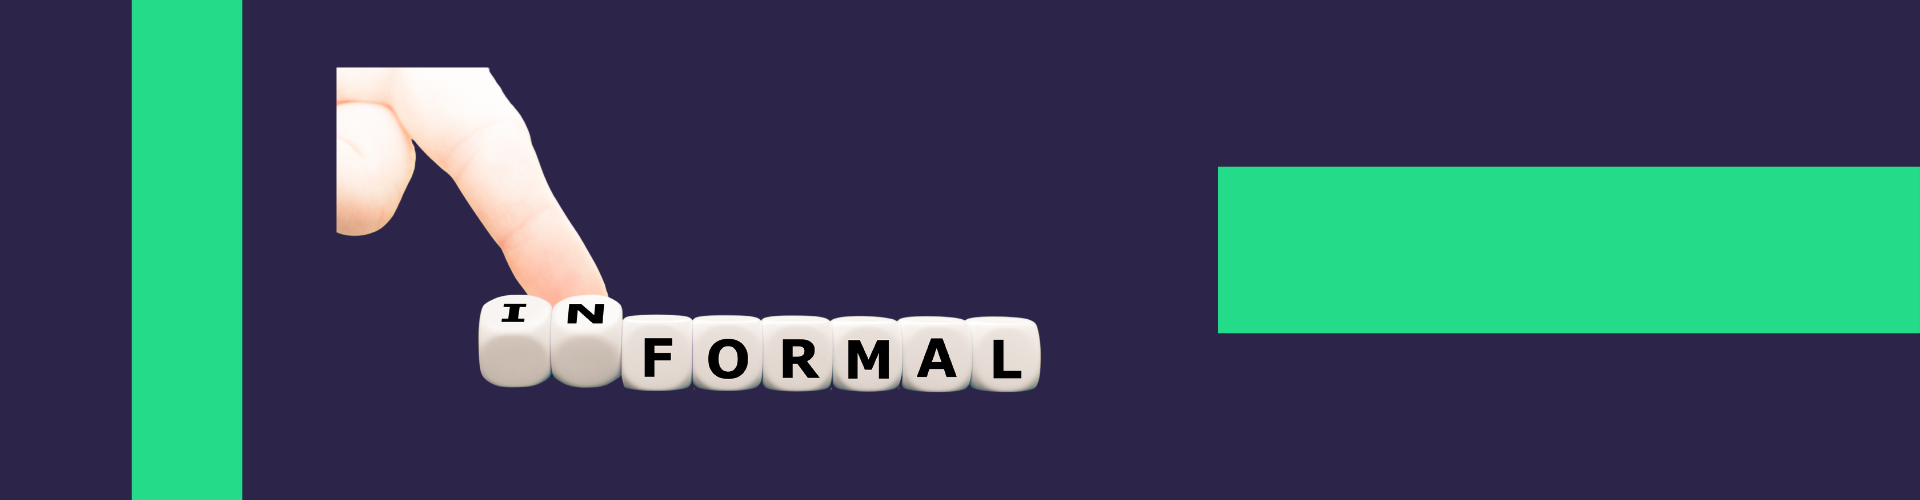 Qual a diferença entre importação formal e informal?